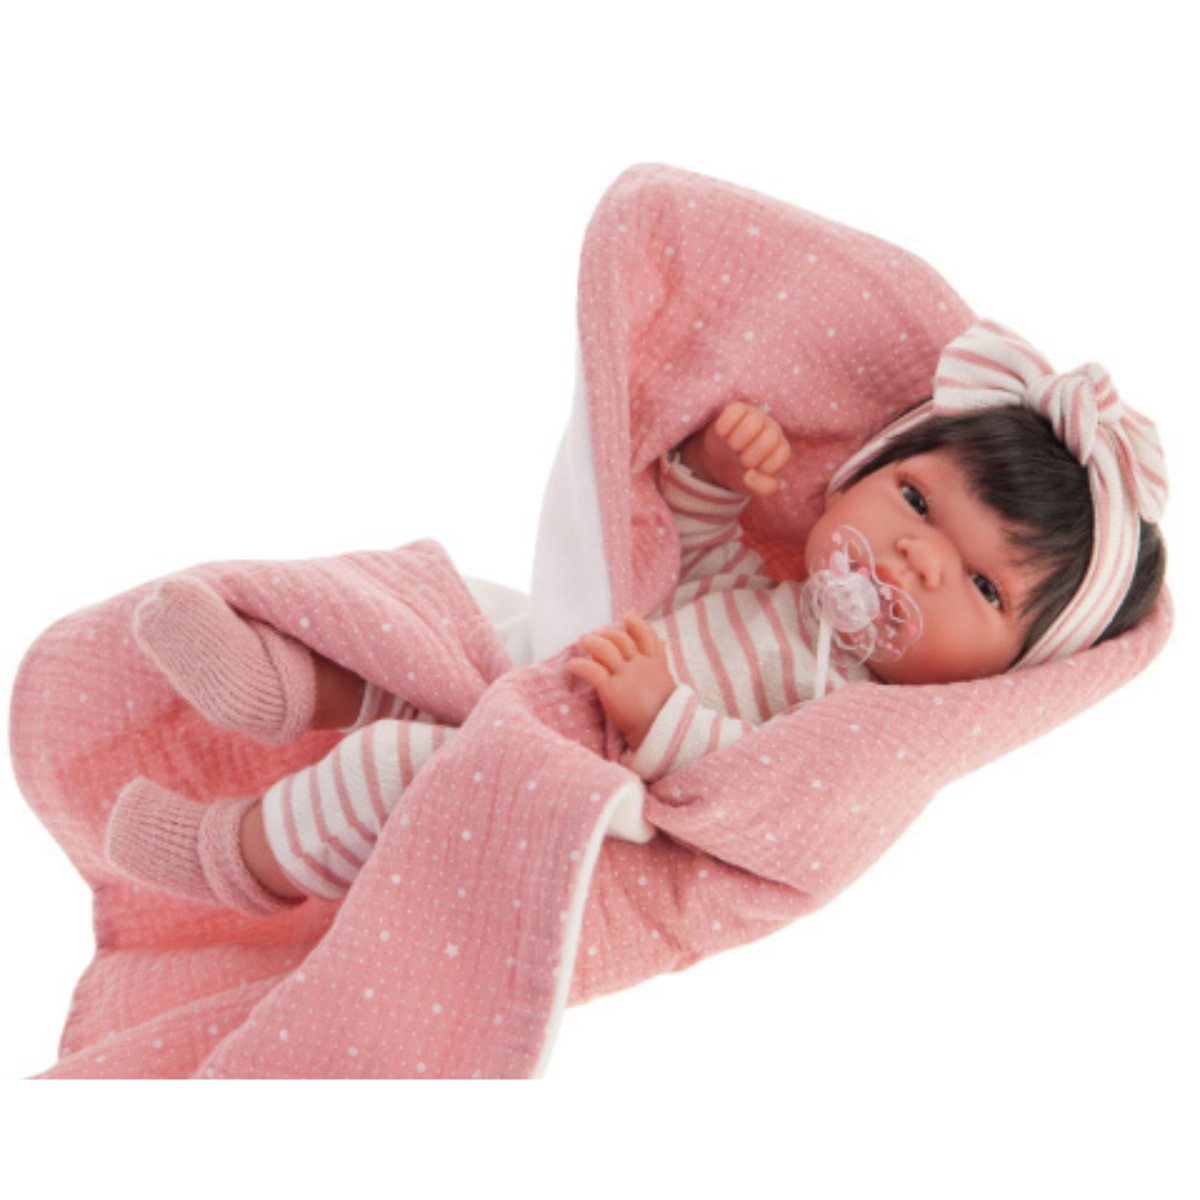 Lalka Antonio Juan Baby Toneta 60146, hiszpański ręcznie robiony bobas w uroczym ubranku, idealny dla każdej dziewczynki.